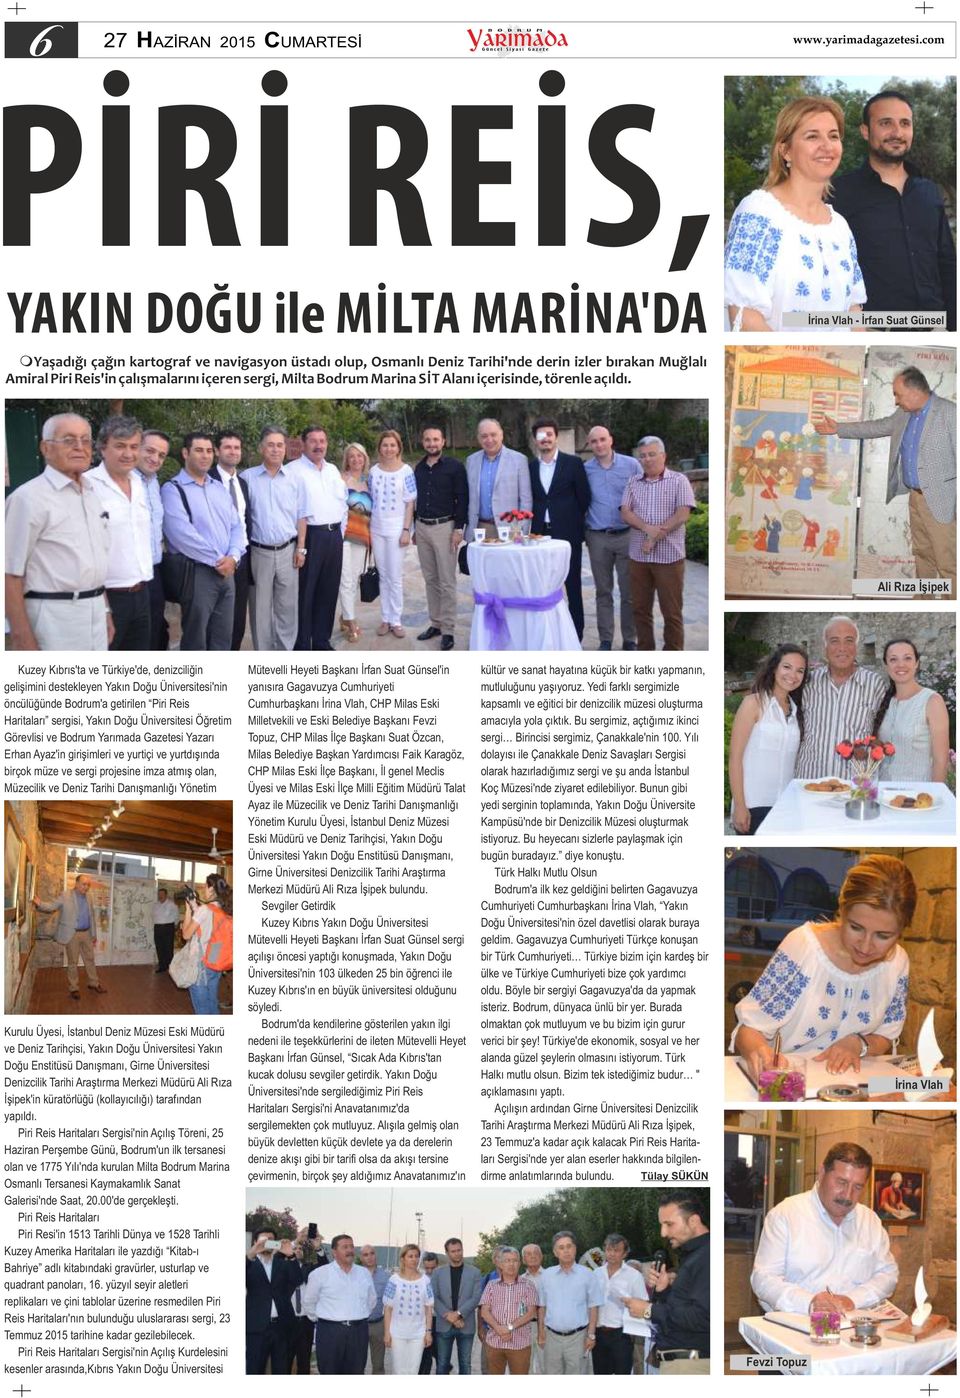 Ali Rıza İşipek Kuzey Kıbrıs'ta ve Türkiye'de, denizciliğin gelişimini destekleyen Yakın Doğu Üniversitesi'nin öncülüğünde Bodrum'a getirilen Piri Reis Haritaları sergisi, Yakın Doğu Üniversitesi